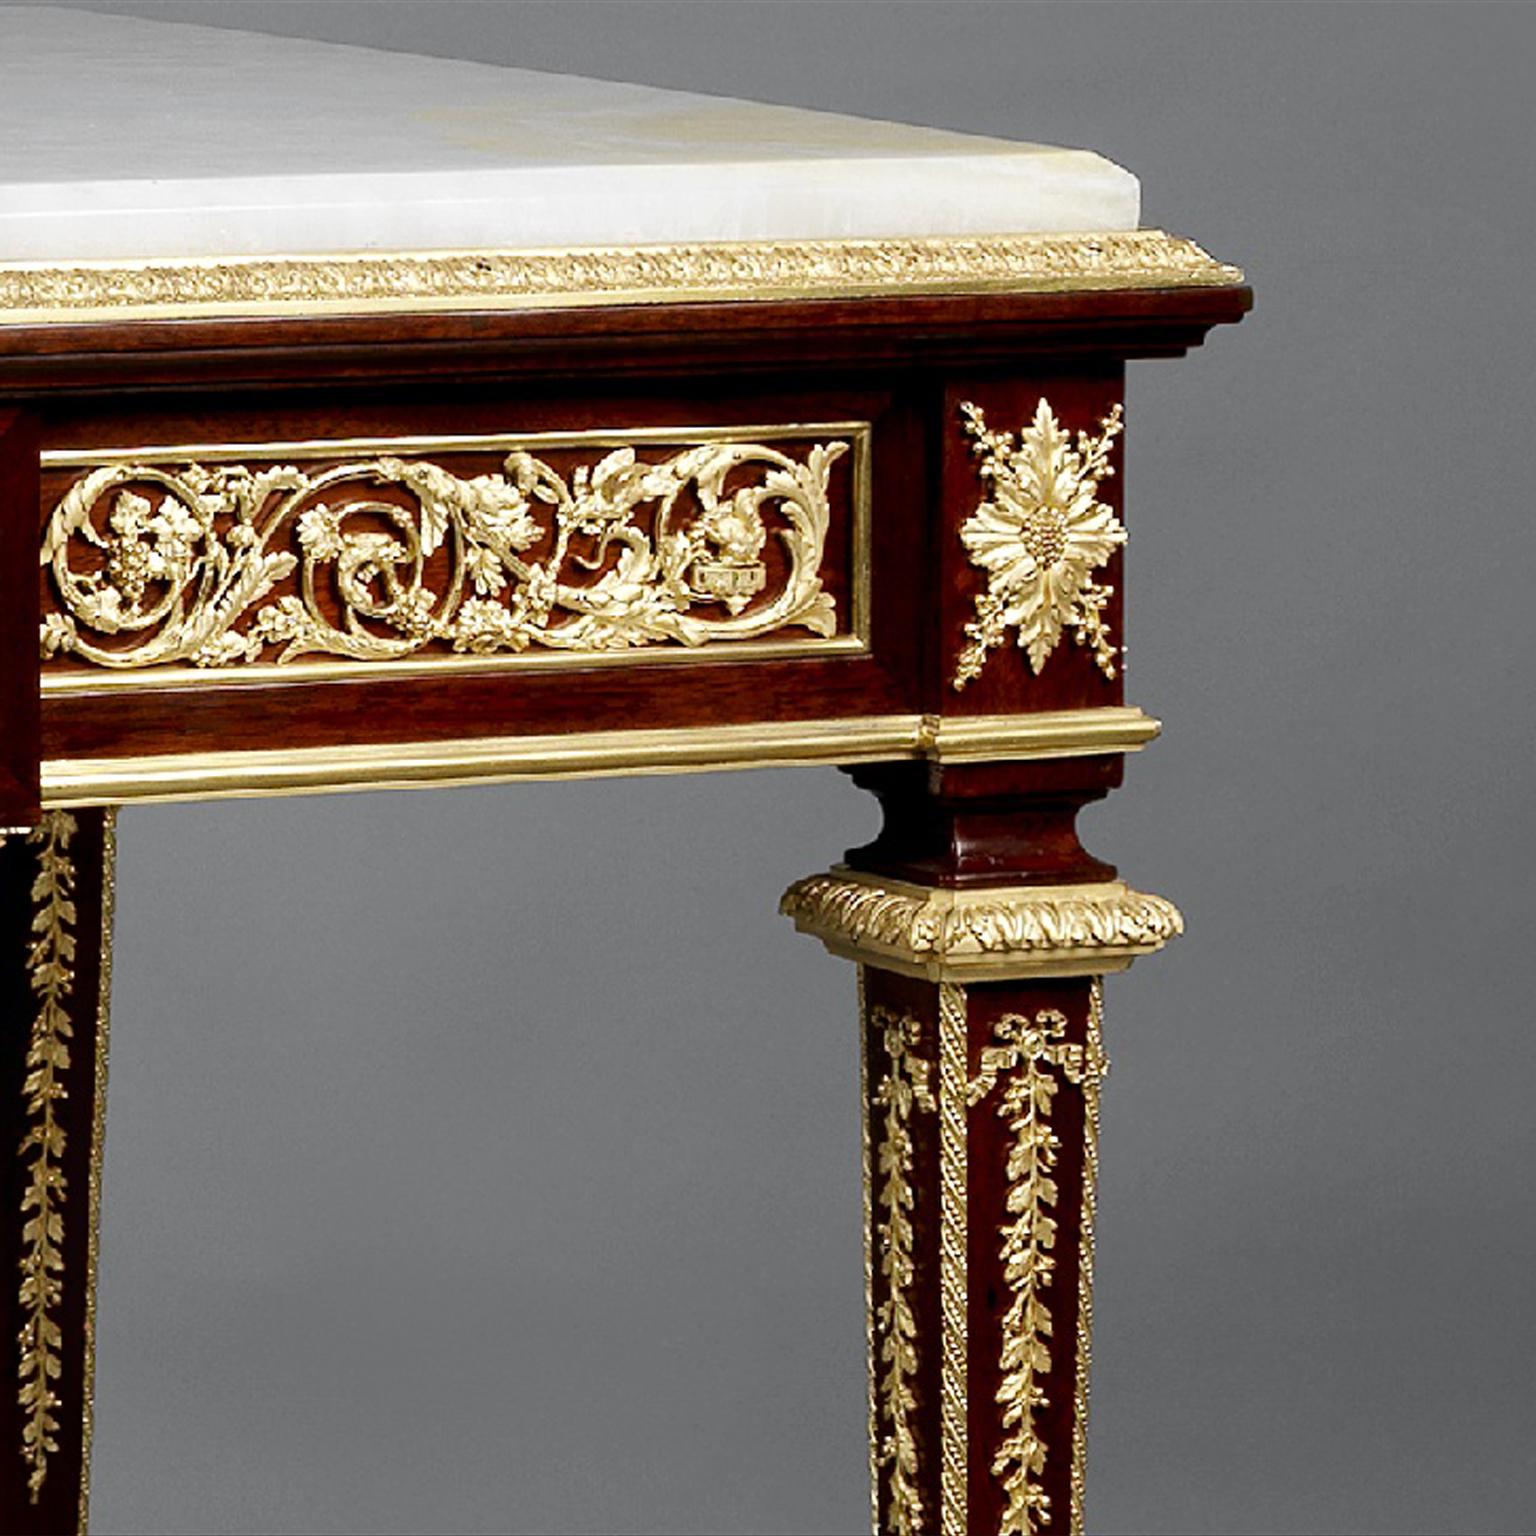 Ein feiner, in Goldbronze gefasster Mahagoni-Mitteltisch mit einer Onyx-Marmorplatte von François Linke.

Linke Indexnummer: 118 Linke Titel: 'Table Louis XVI, bois d'acajou bronze dorés.'

Dieser feine, mit vergoldeter Bronze gefasste